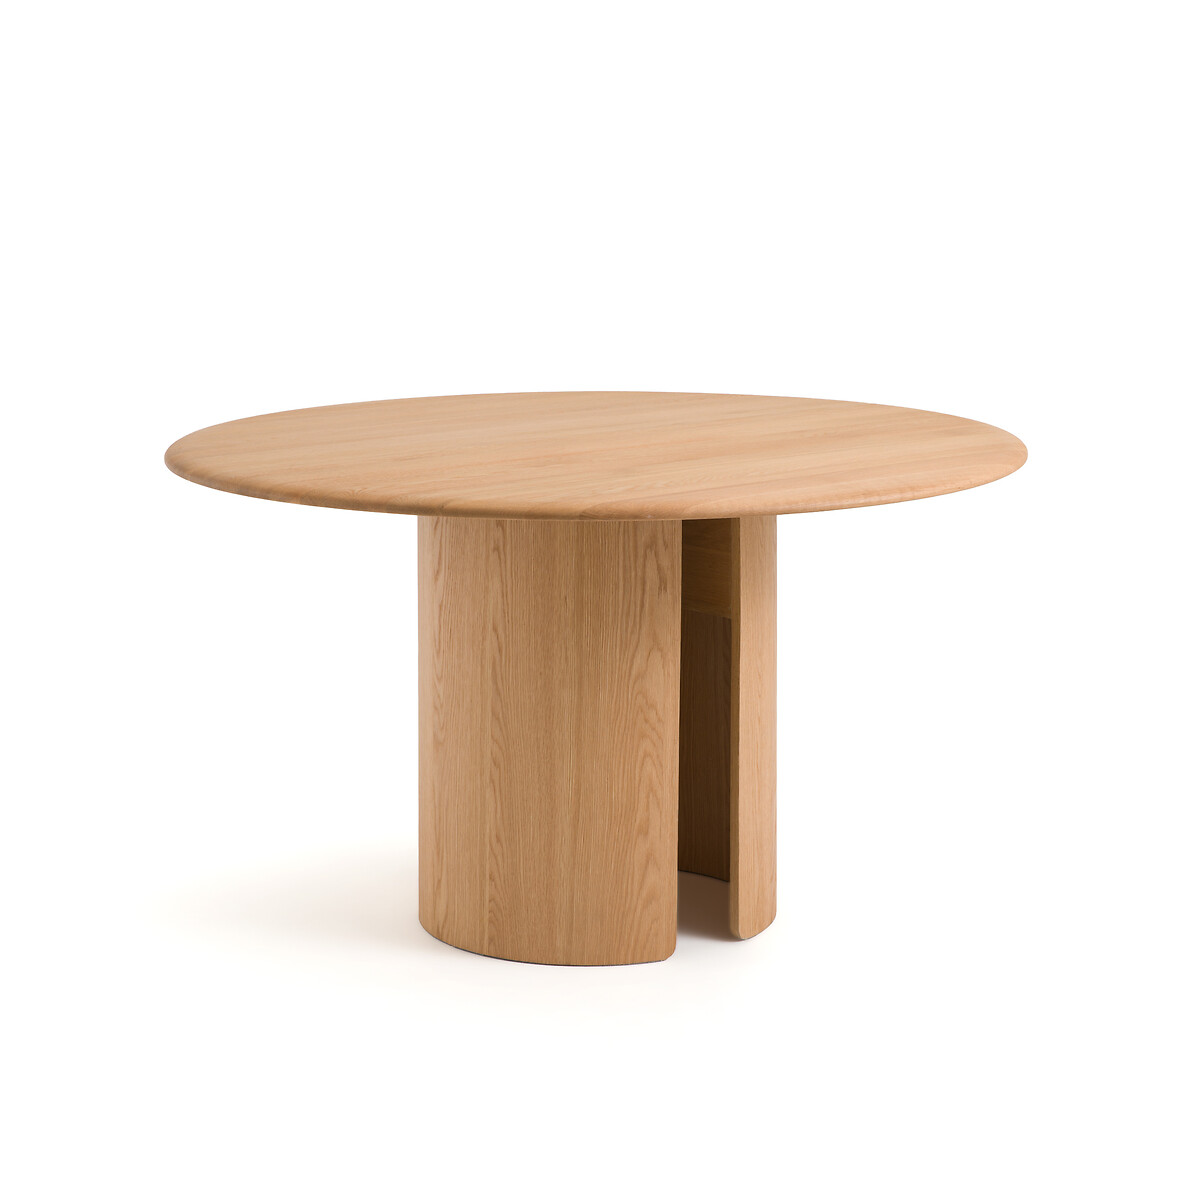 Стол круглый из дуба Sculpta на 6 персон каштановый стол раздвижной из массива дуба fsc olaga на 8 персон каштановый